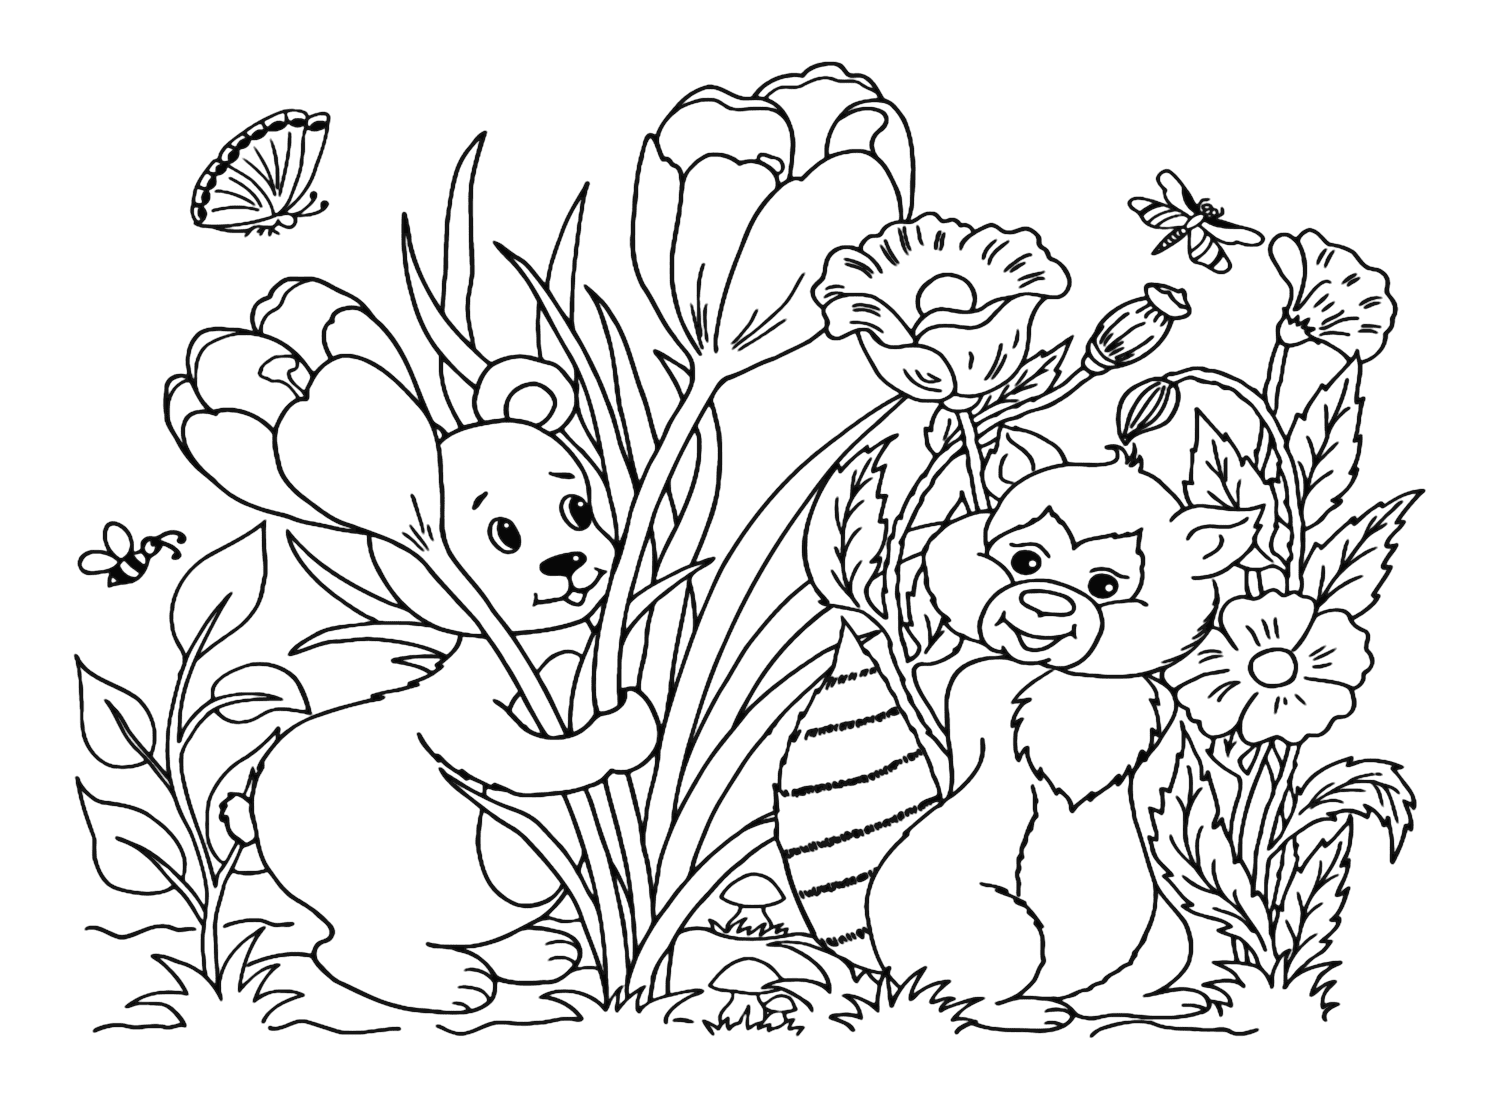 Página para colorir de texugo com urso de Badger